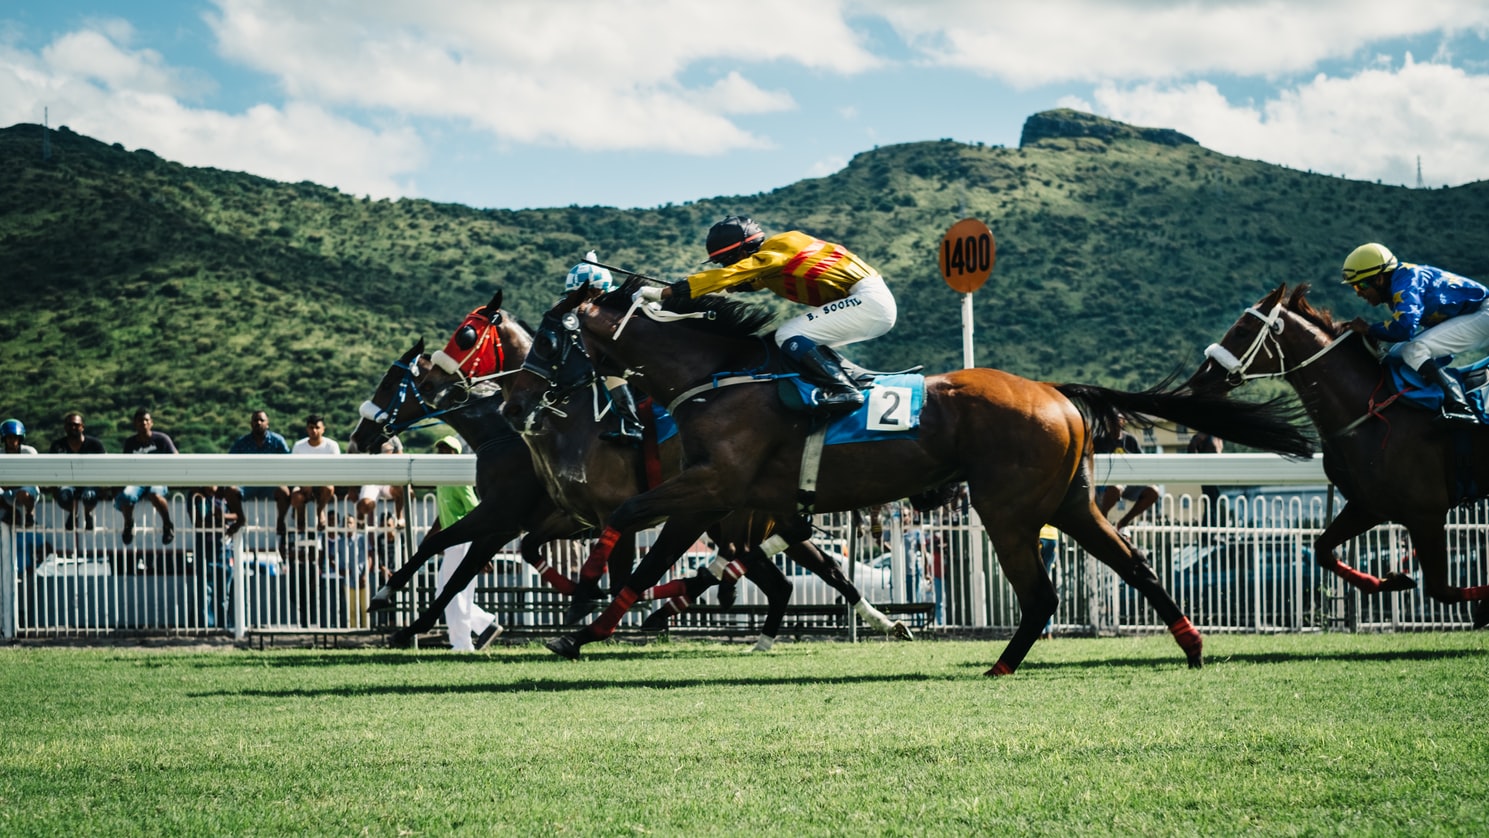 Mauritius-port-louis-paarden-renbaan